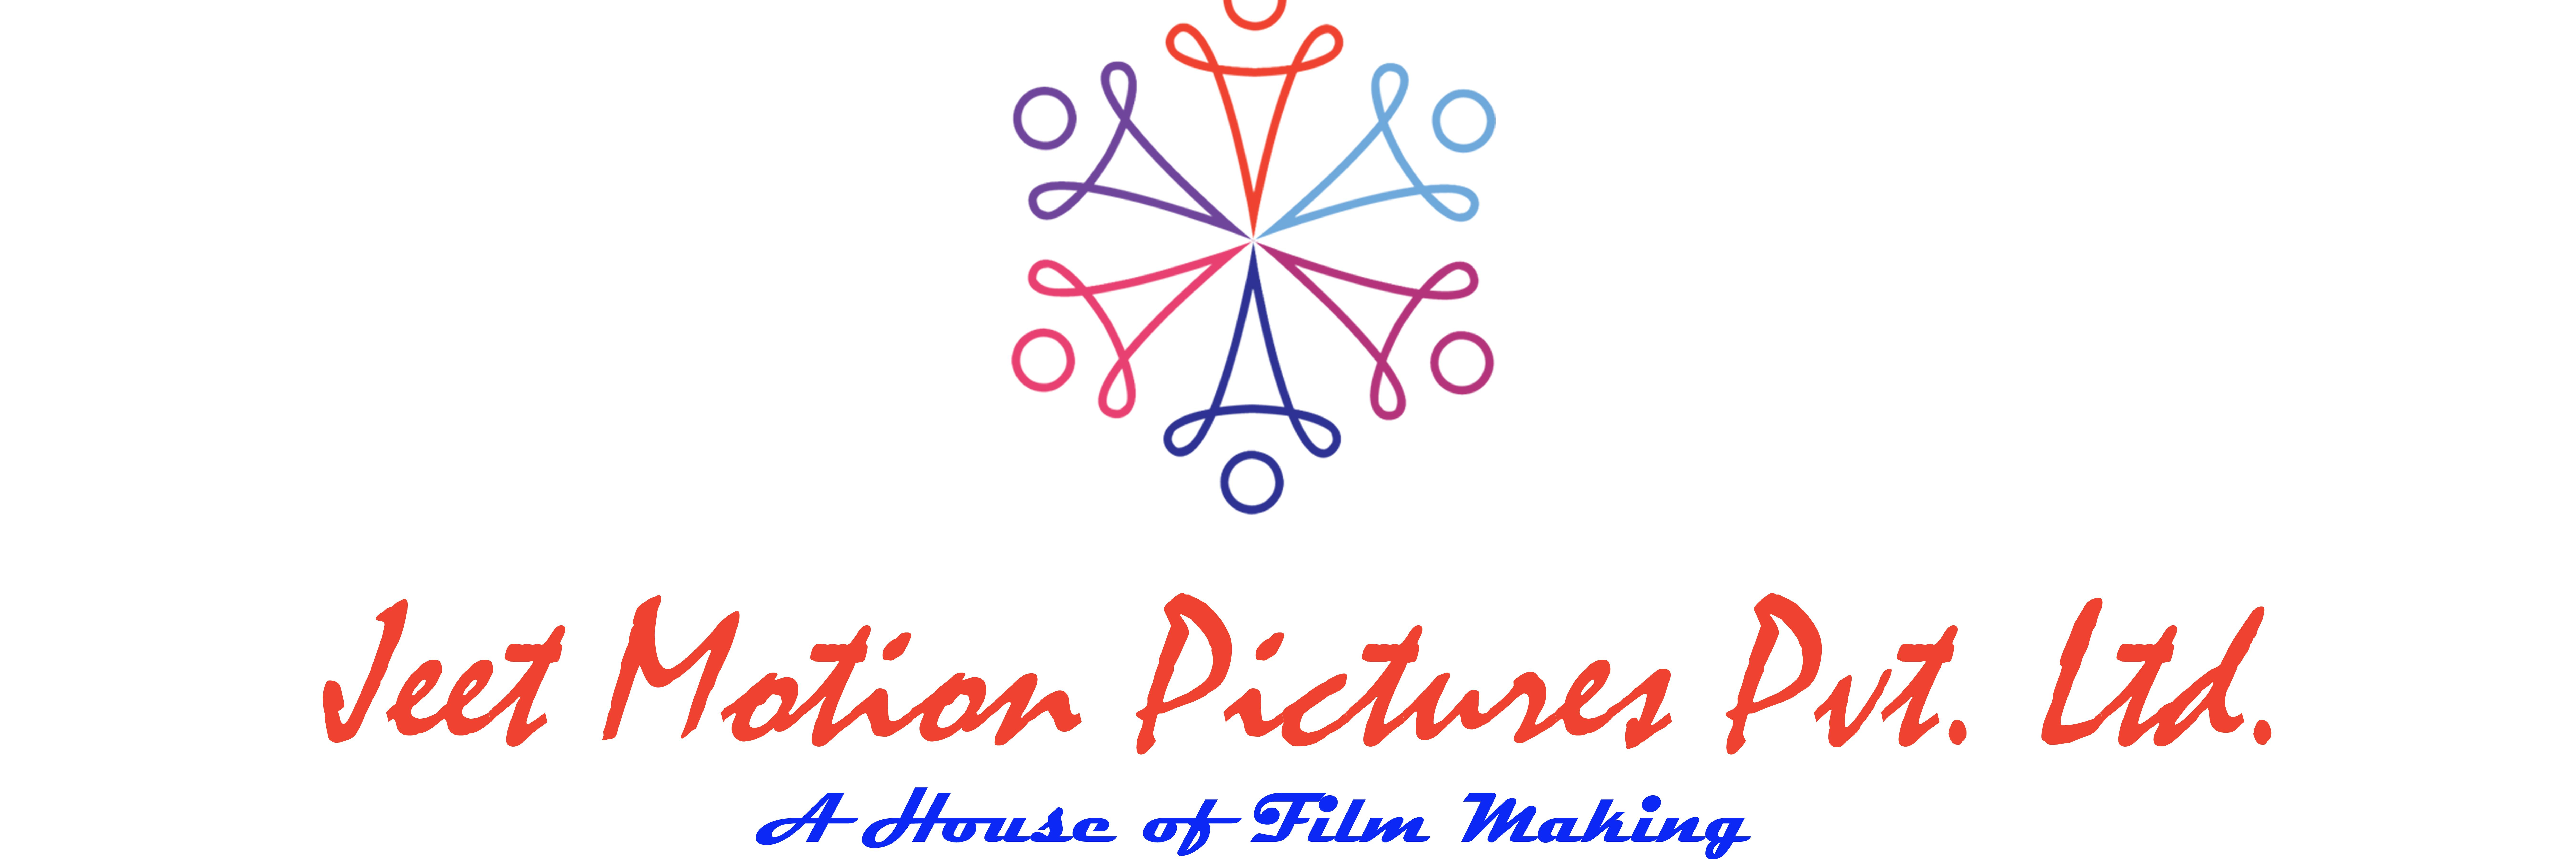 Jeet Motion Pictures Pvt Ltd